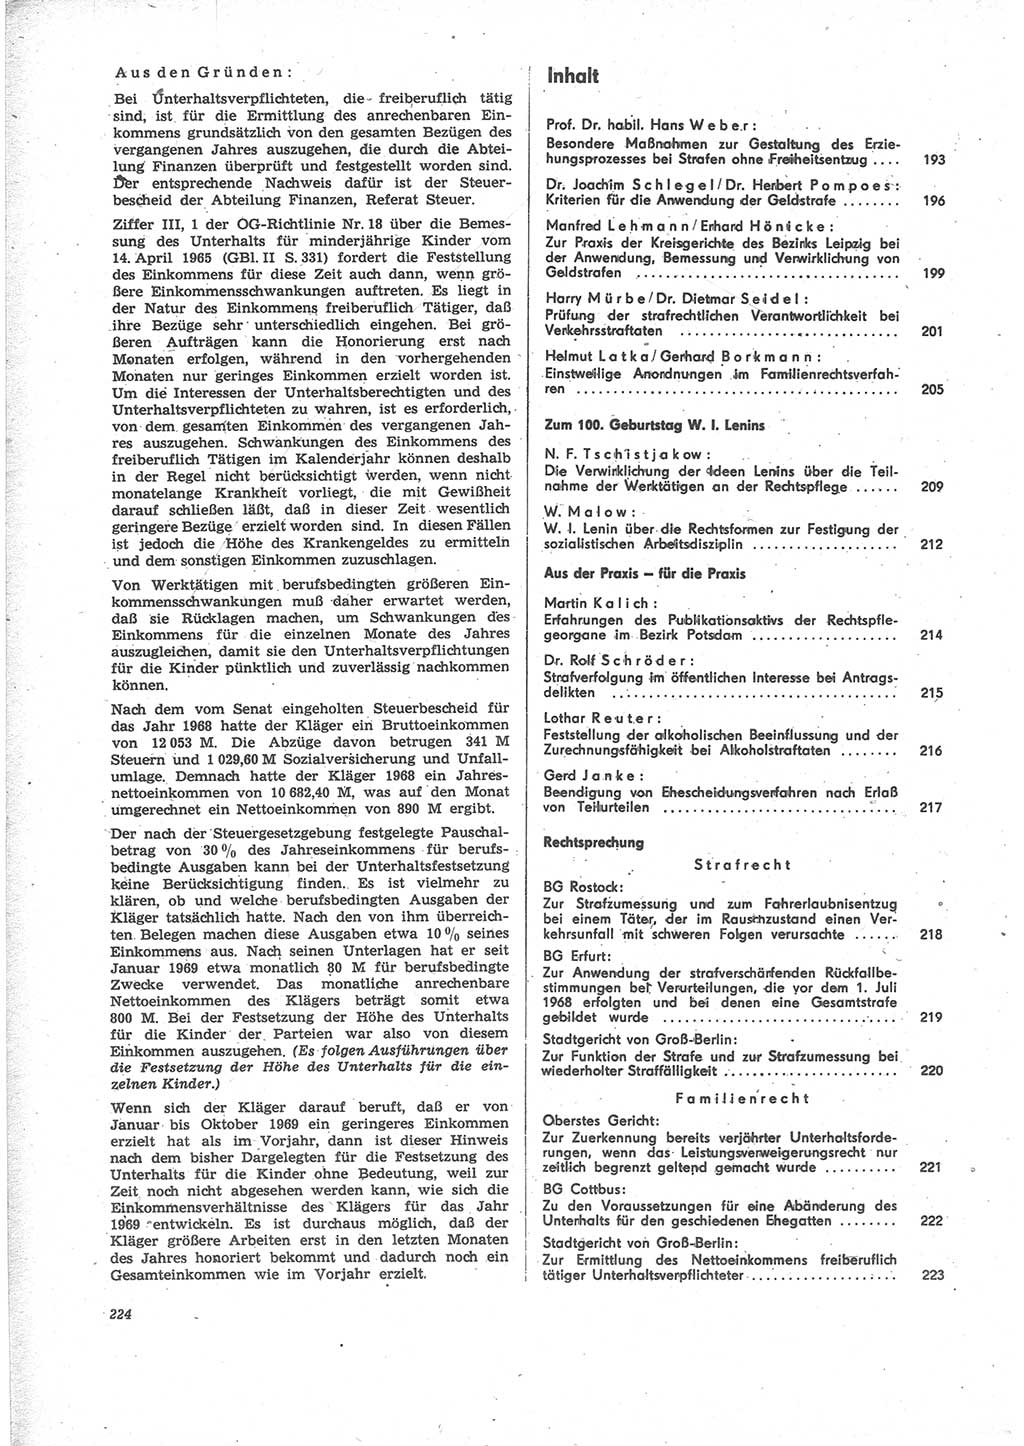 Neue Justiz (NJ), Zeitschrift für Recht und Rechtswissenschaft [Deutsche Demokratische Republik (DDR)], 24. Jahrgang 1970, Seite 224 (NJ DDR 1970, S. 224)